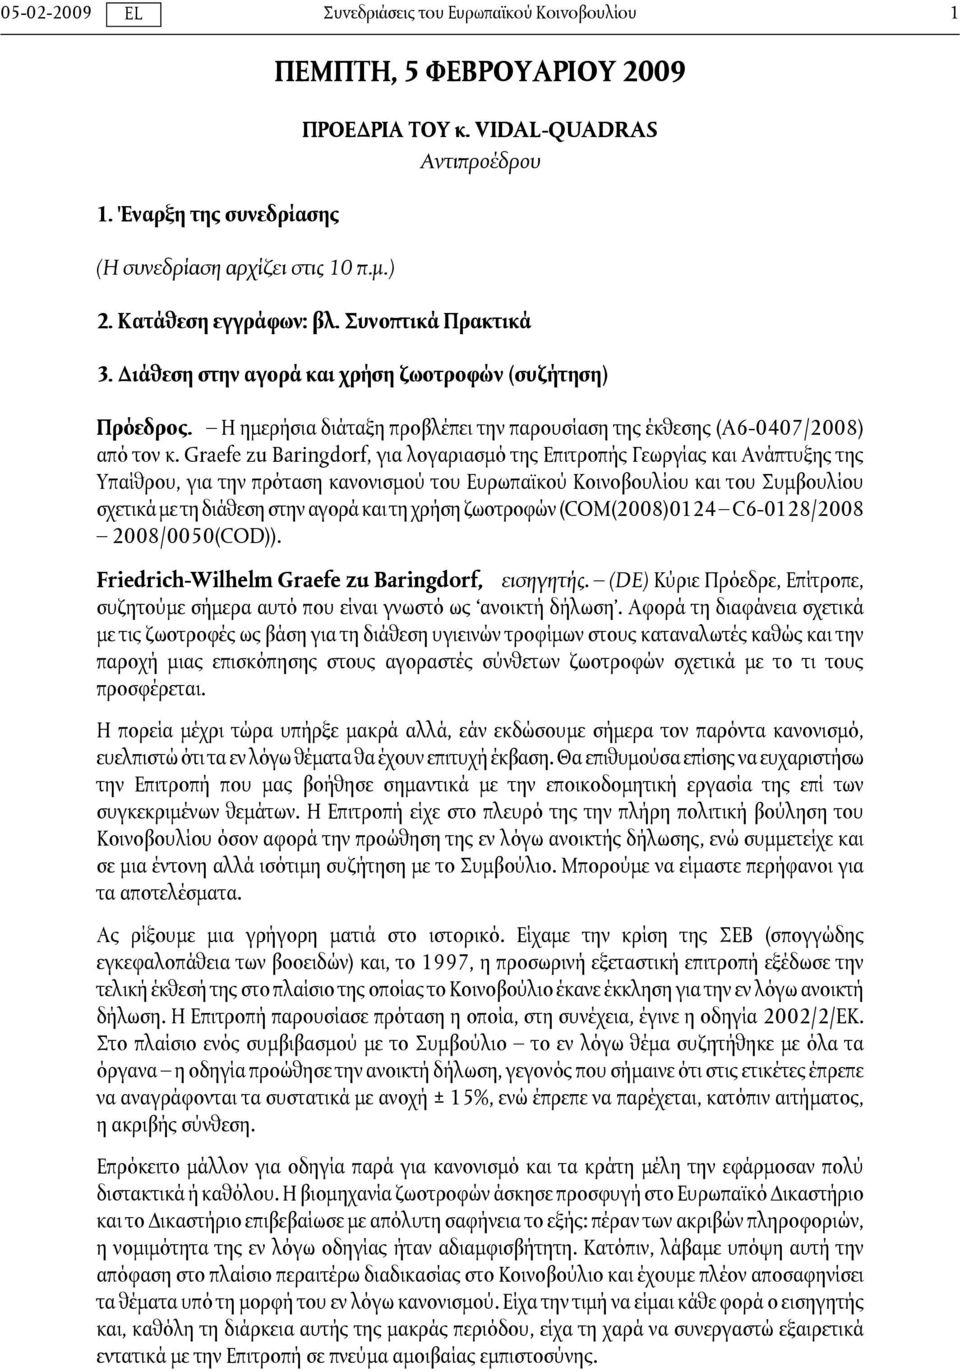 Graefe zu Baringdorf, για λογαριασμό της Επιτροπής Γεωργίας και Ανάπτυξης της Υπαίθρου, για την πρόταση κανονισμού του Ευρωπαϊκού Κοινοβουλίου και του Συμβουλίου σχετικά με τη διάθεση στην αγορά και